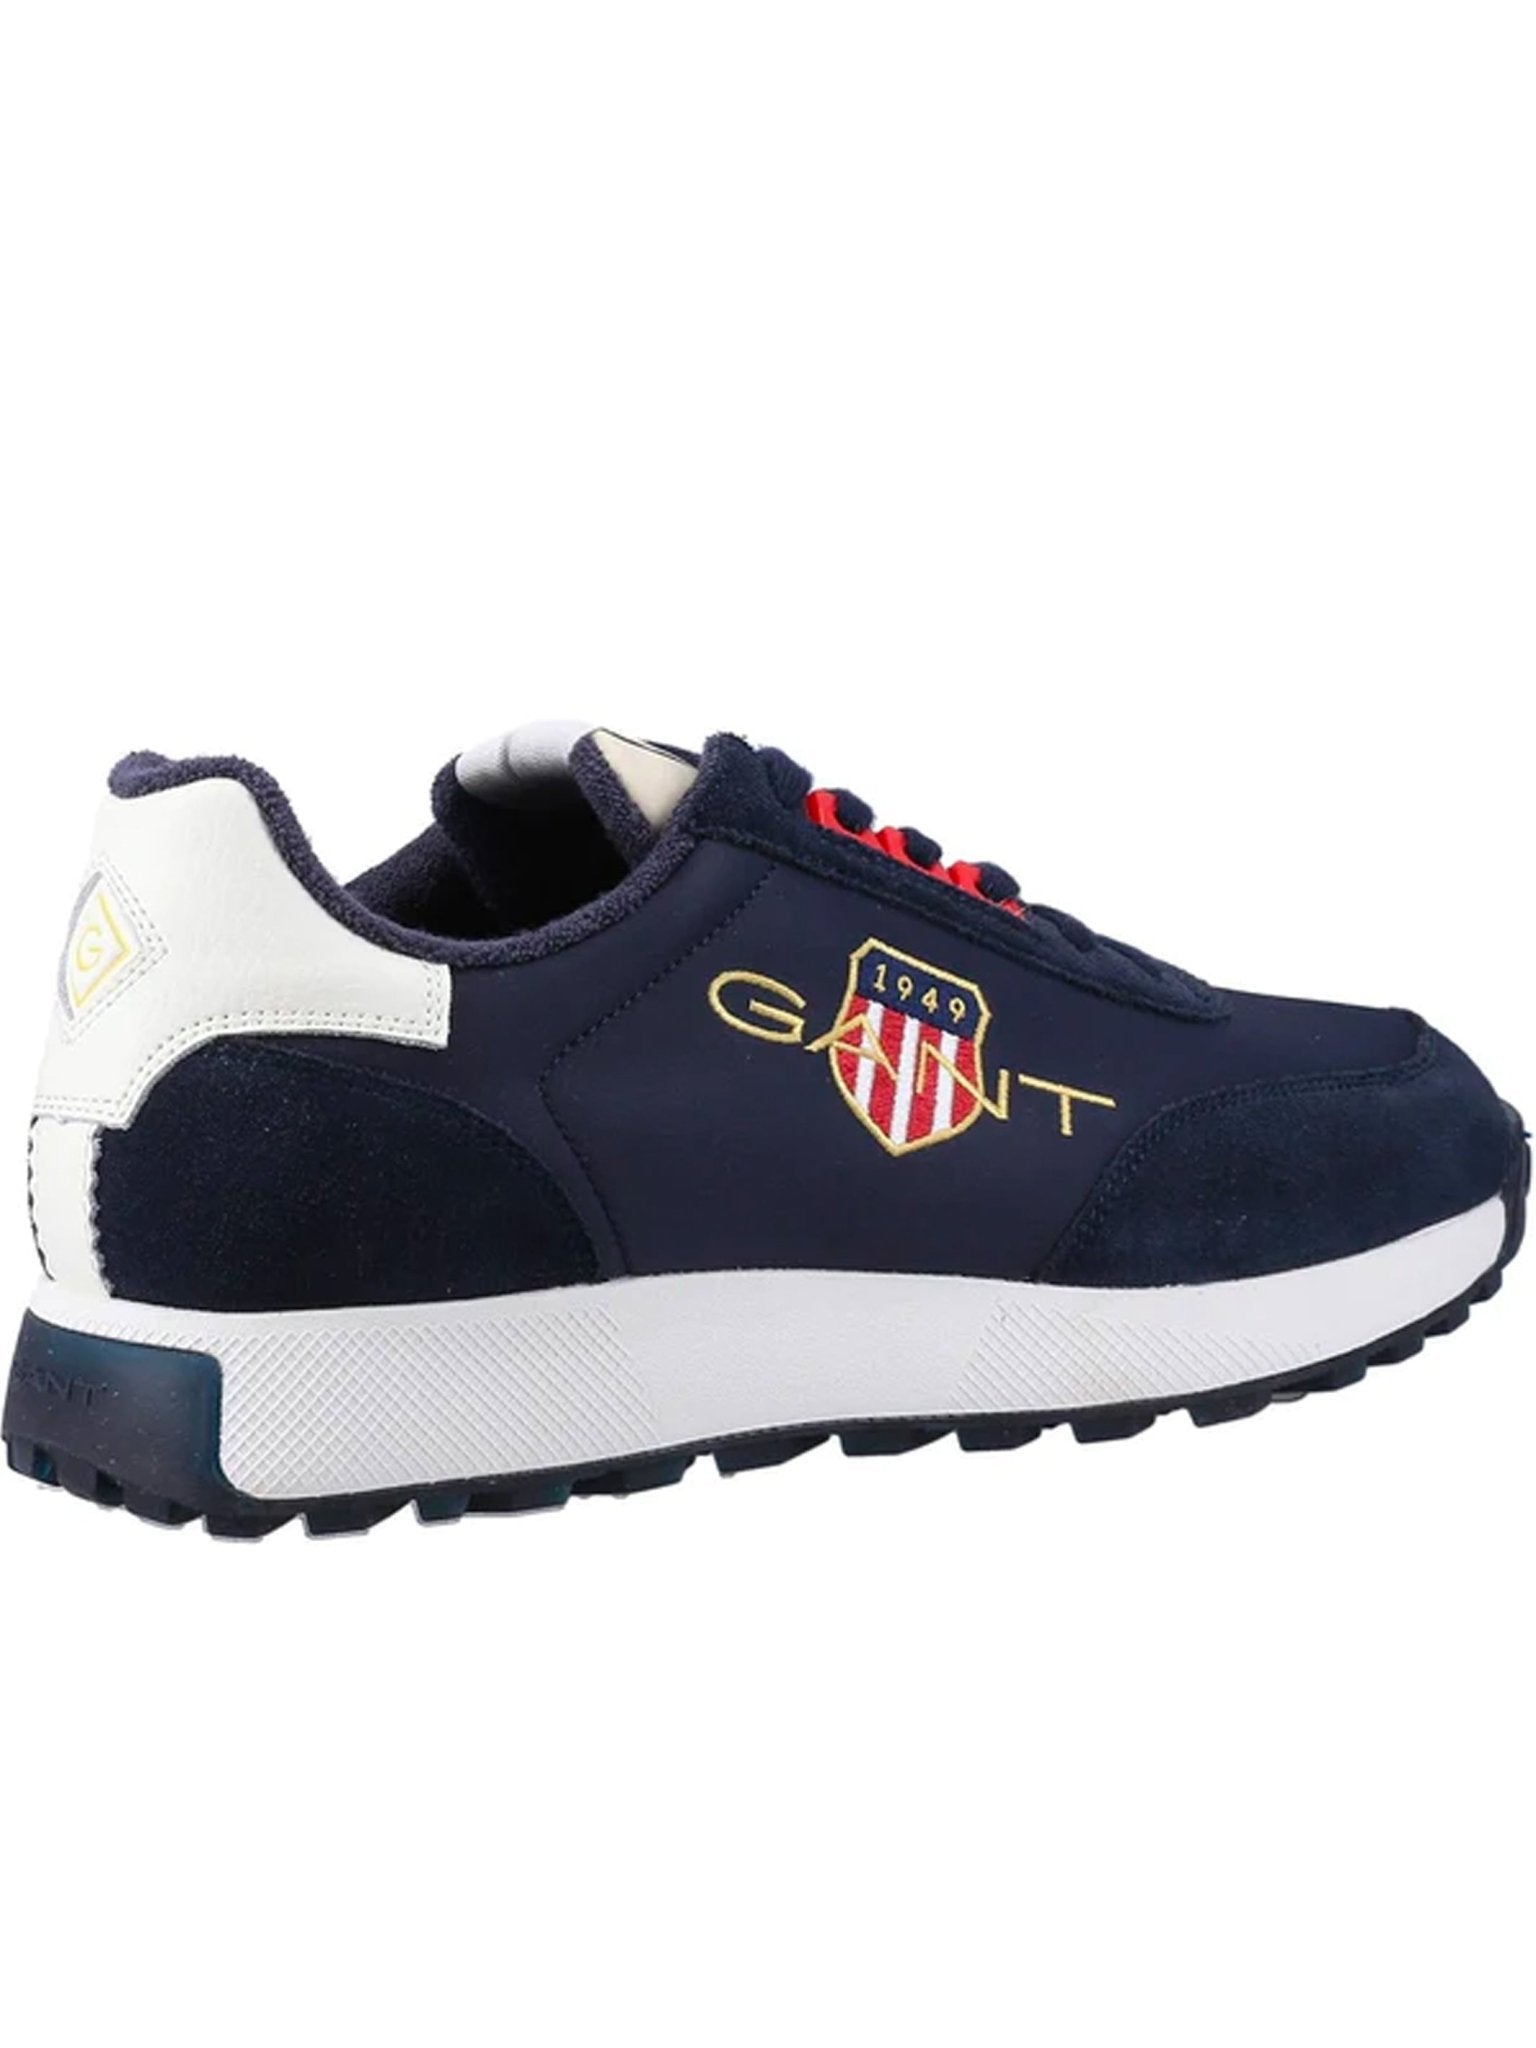 GANT GANT - Garold Mens trainer / Gant sneaker - Gant Shield Logo Shoes